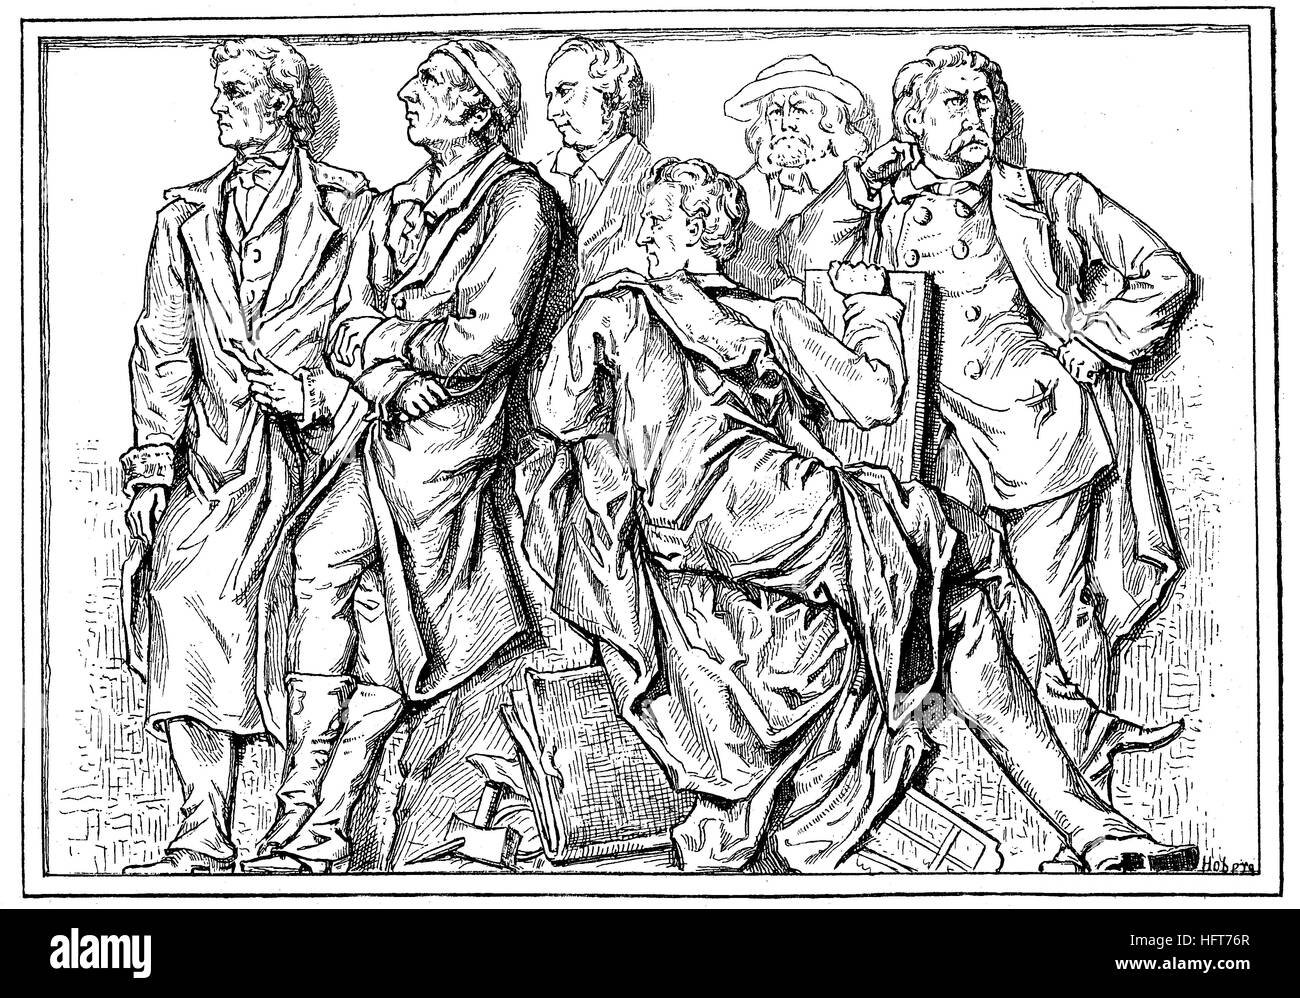 Von links: Rietschel, G. Schadow, W. Schadow, sind Schnorr von Carolsfeld, Rethel Und Schwind, die Personen aus der Relieffries Geyer in der National Gallery Berlin, Deutschland, Holzschnitt aus dem Jahr 1885, digital verbessert Stockfoto